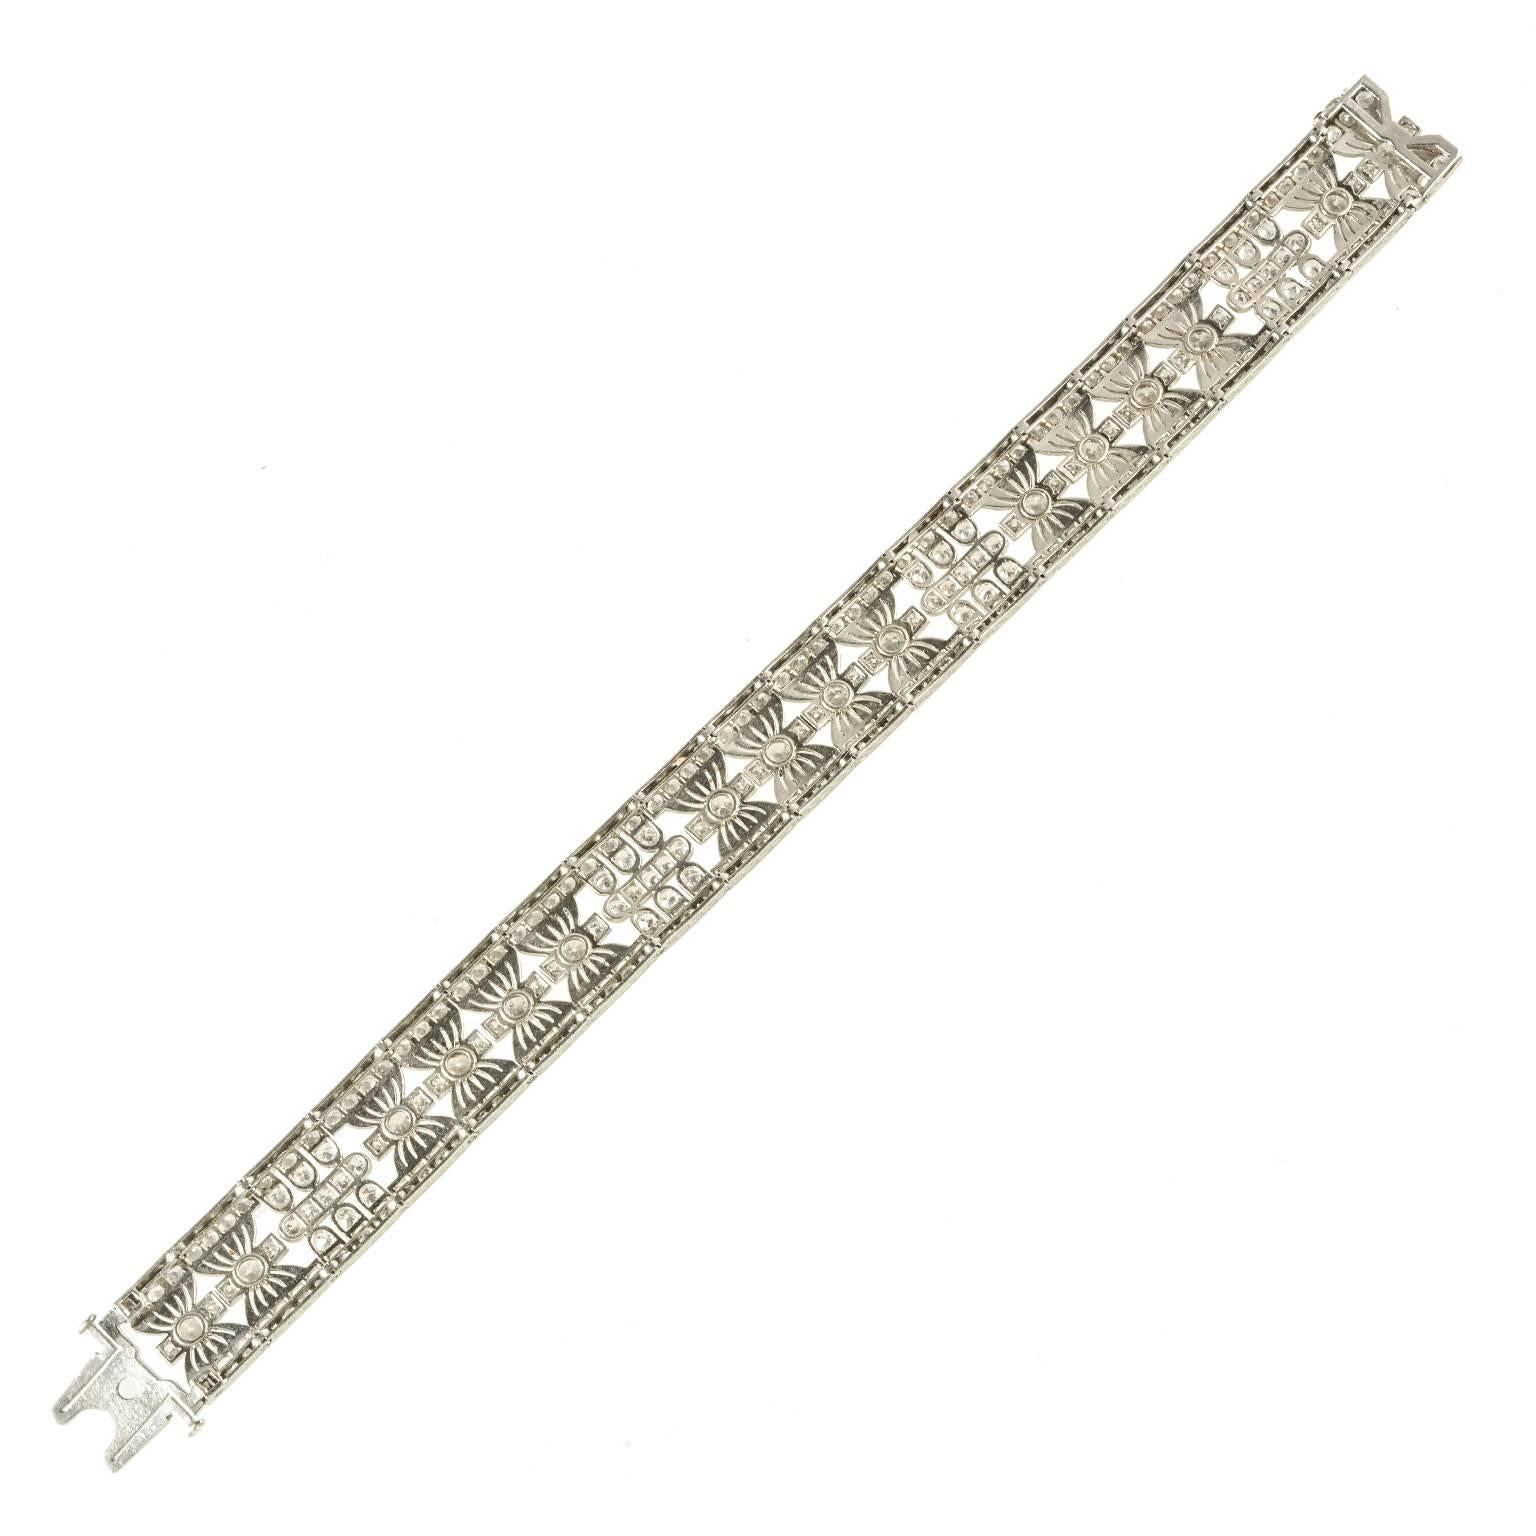 Edwardian unique platinum and diamond 1910c fine quality bracelet